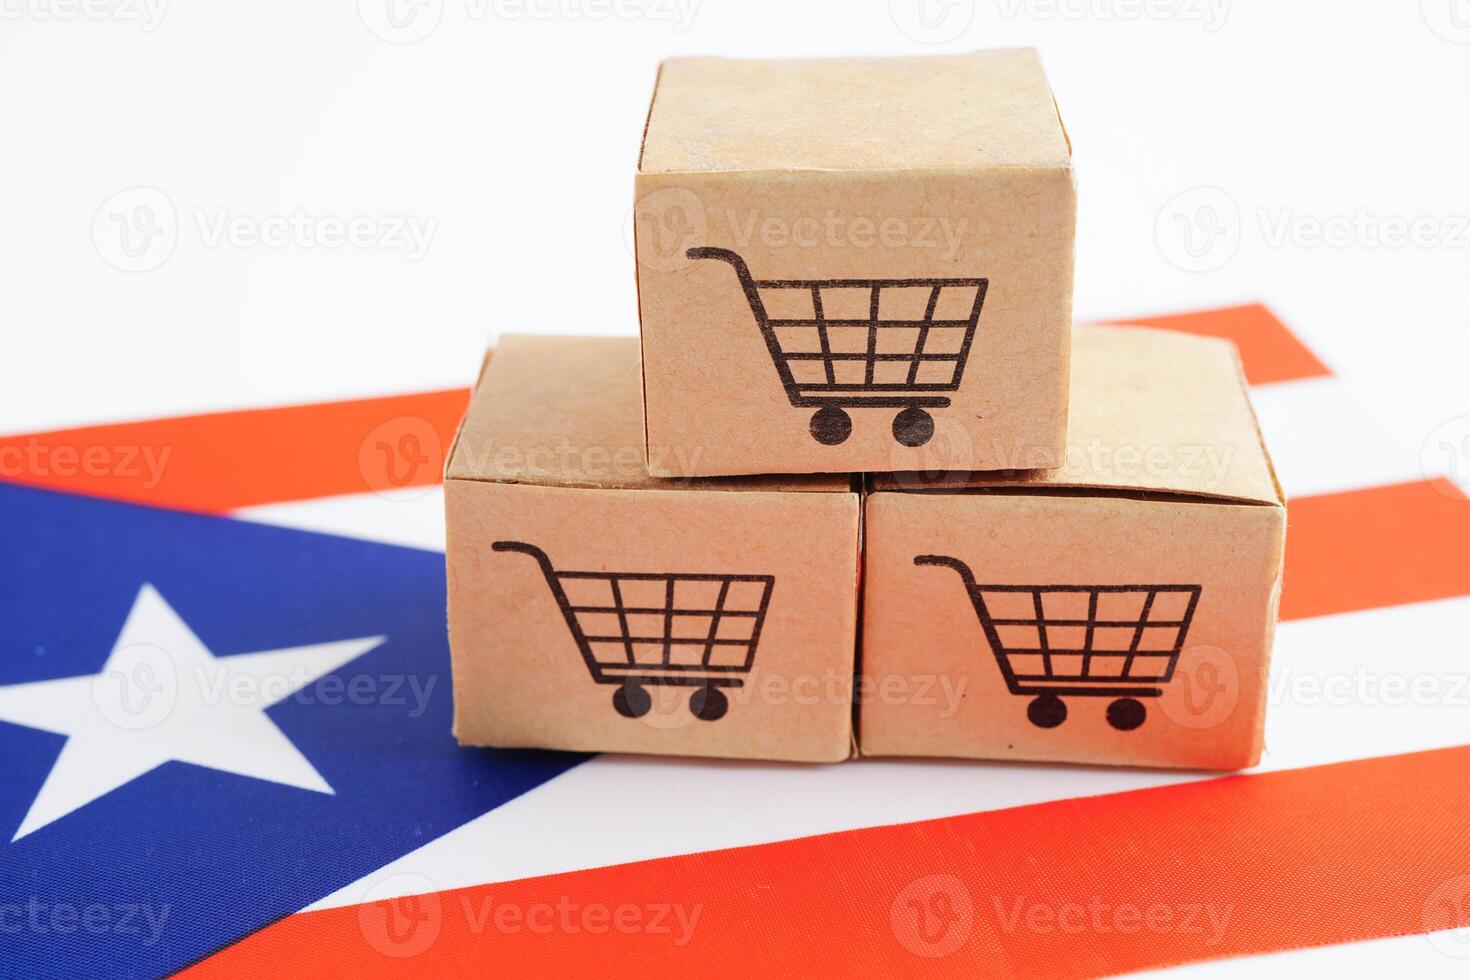 in linea acquisti, shopping carrello scatola su puerto stecca bandiera, importare esportare, finanza commercio. foto